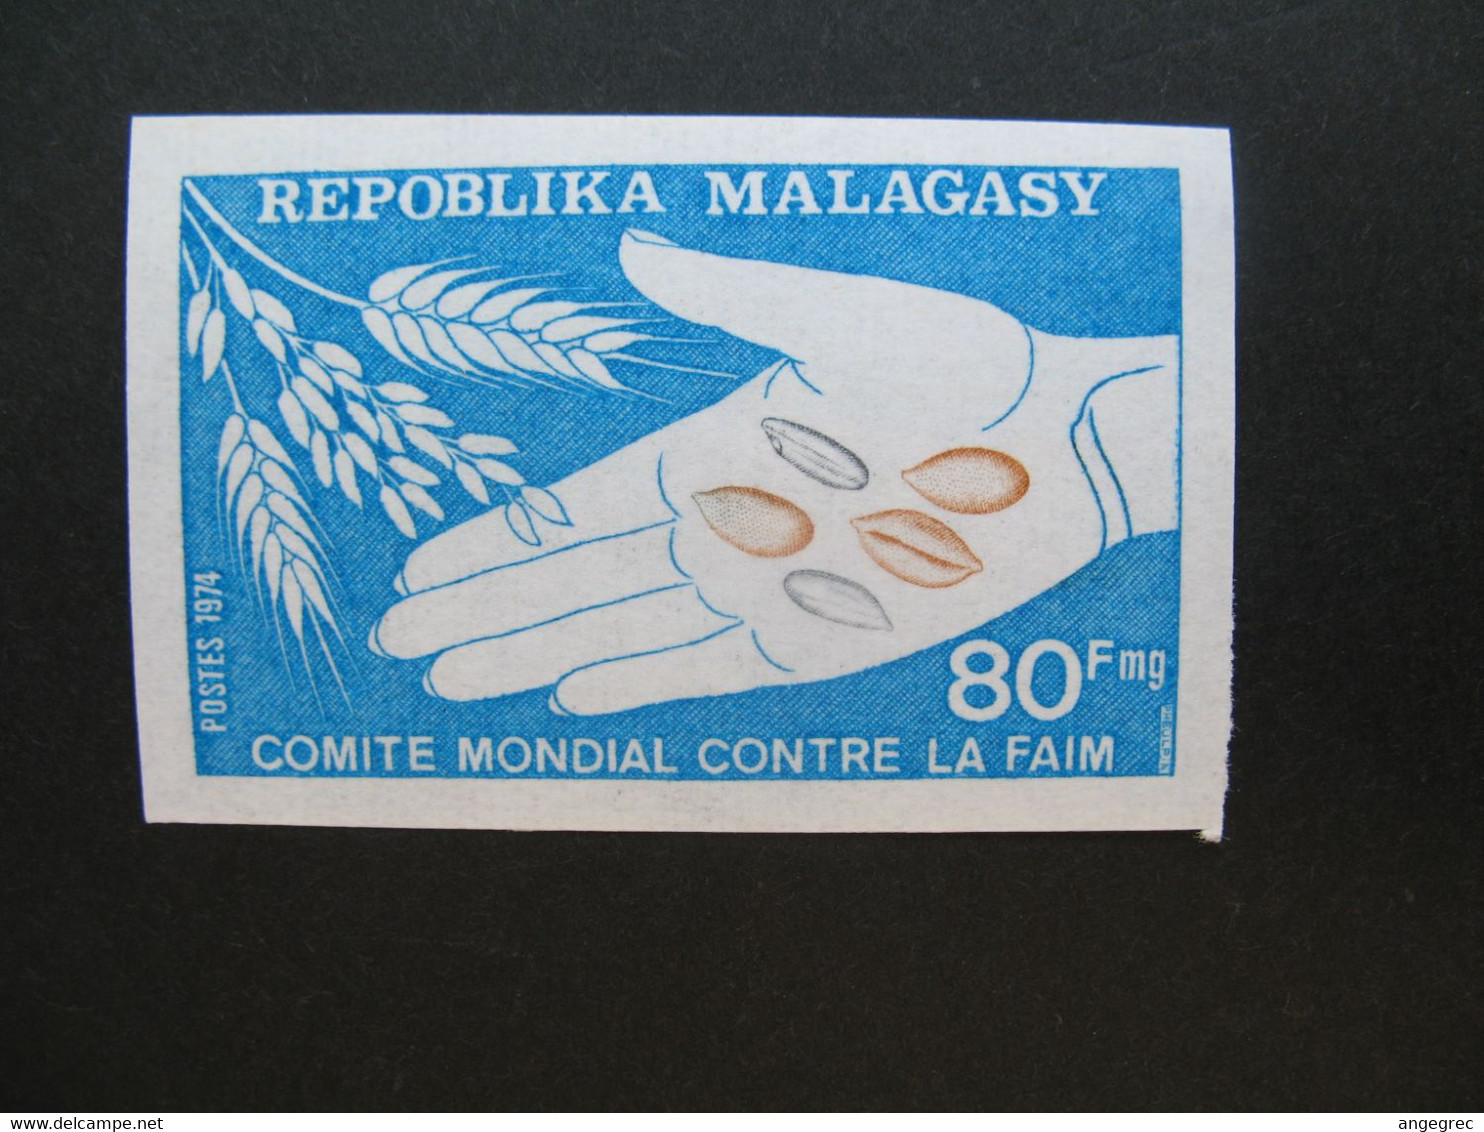 Timbre ND Non Dentelé Neuf ** MNH - Imperf   Madagascar   N° 546  Comité Mondial Contre La Faim  FAO - Contre La Faim